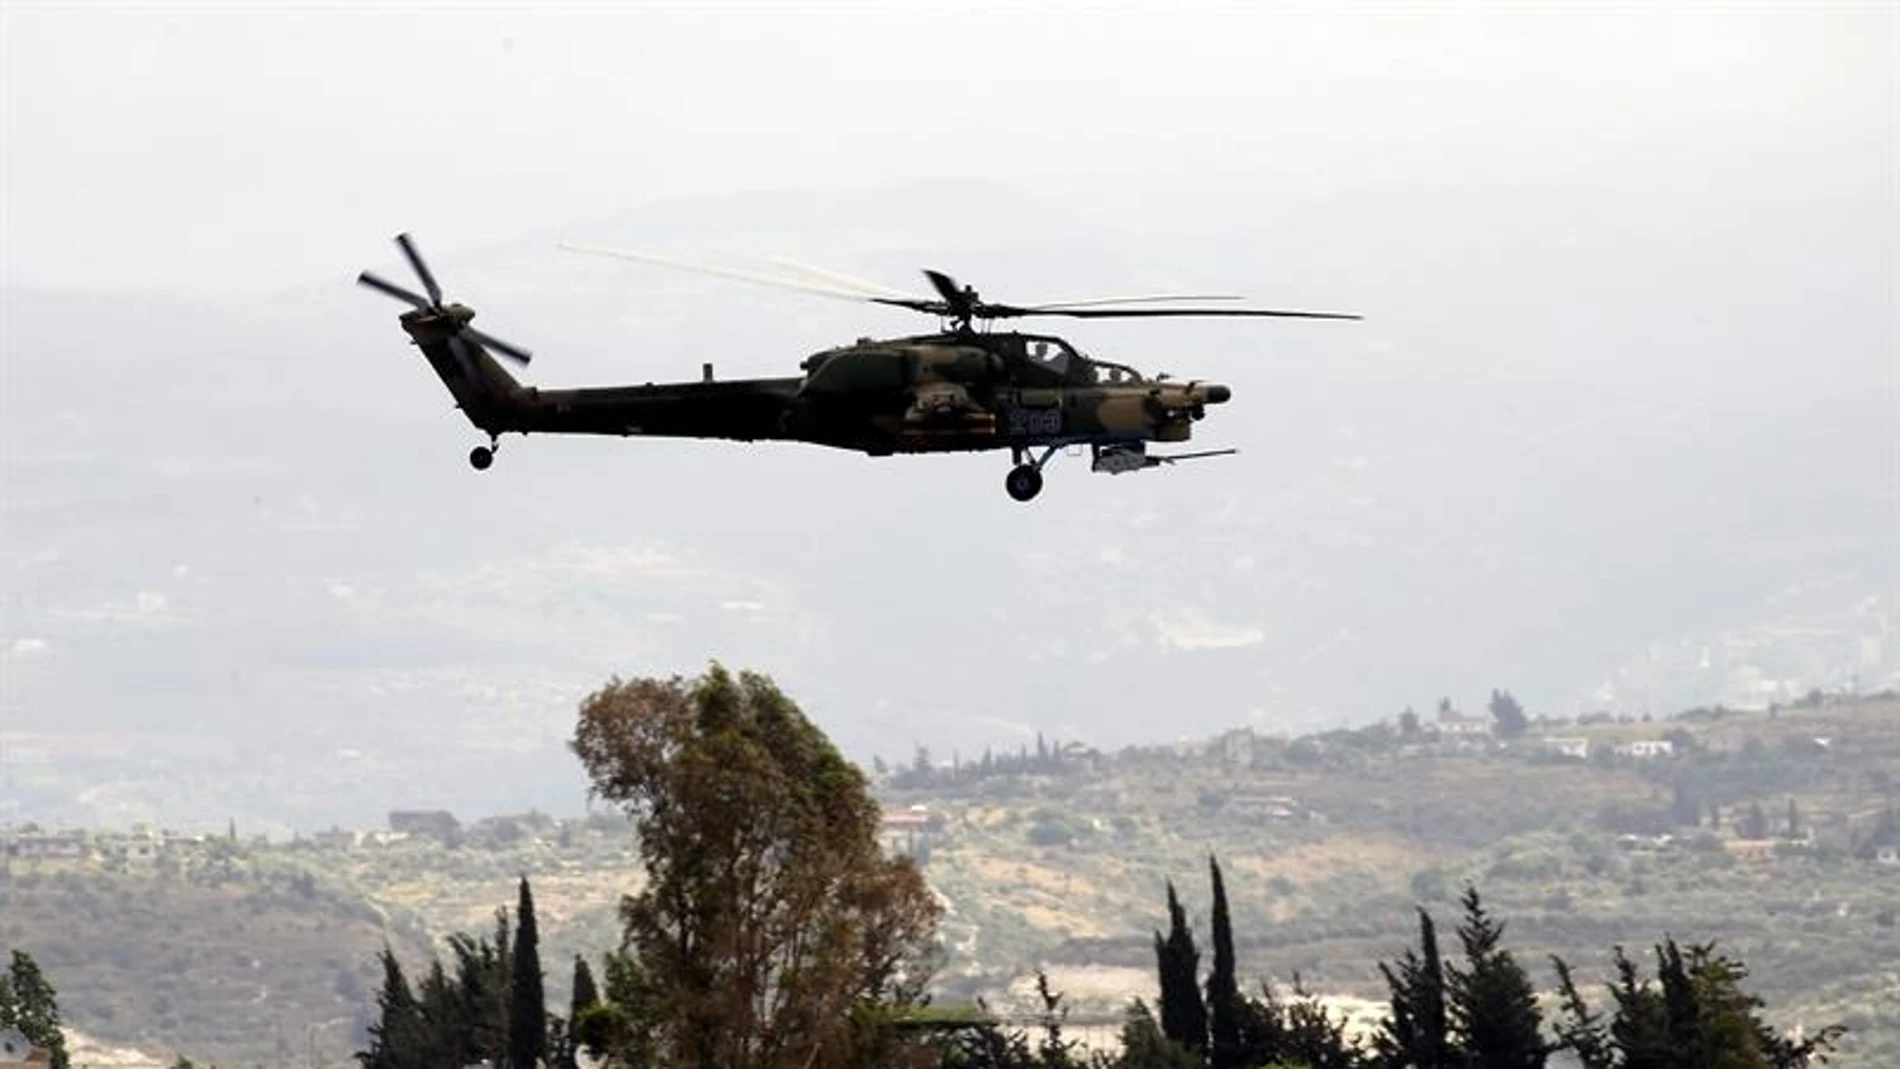 Un helicóptero ruso Mi-28 patrulla cerca de la base aérea Hmeimym en la provincia de Latakia (Siria)